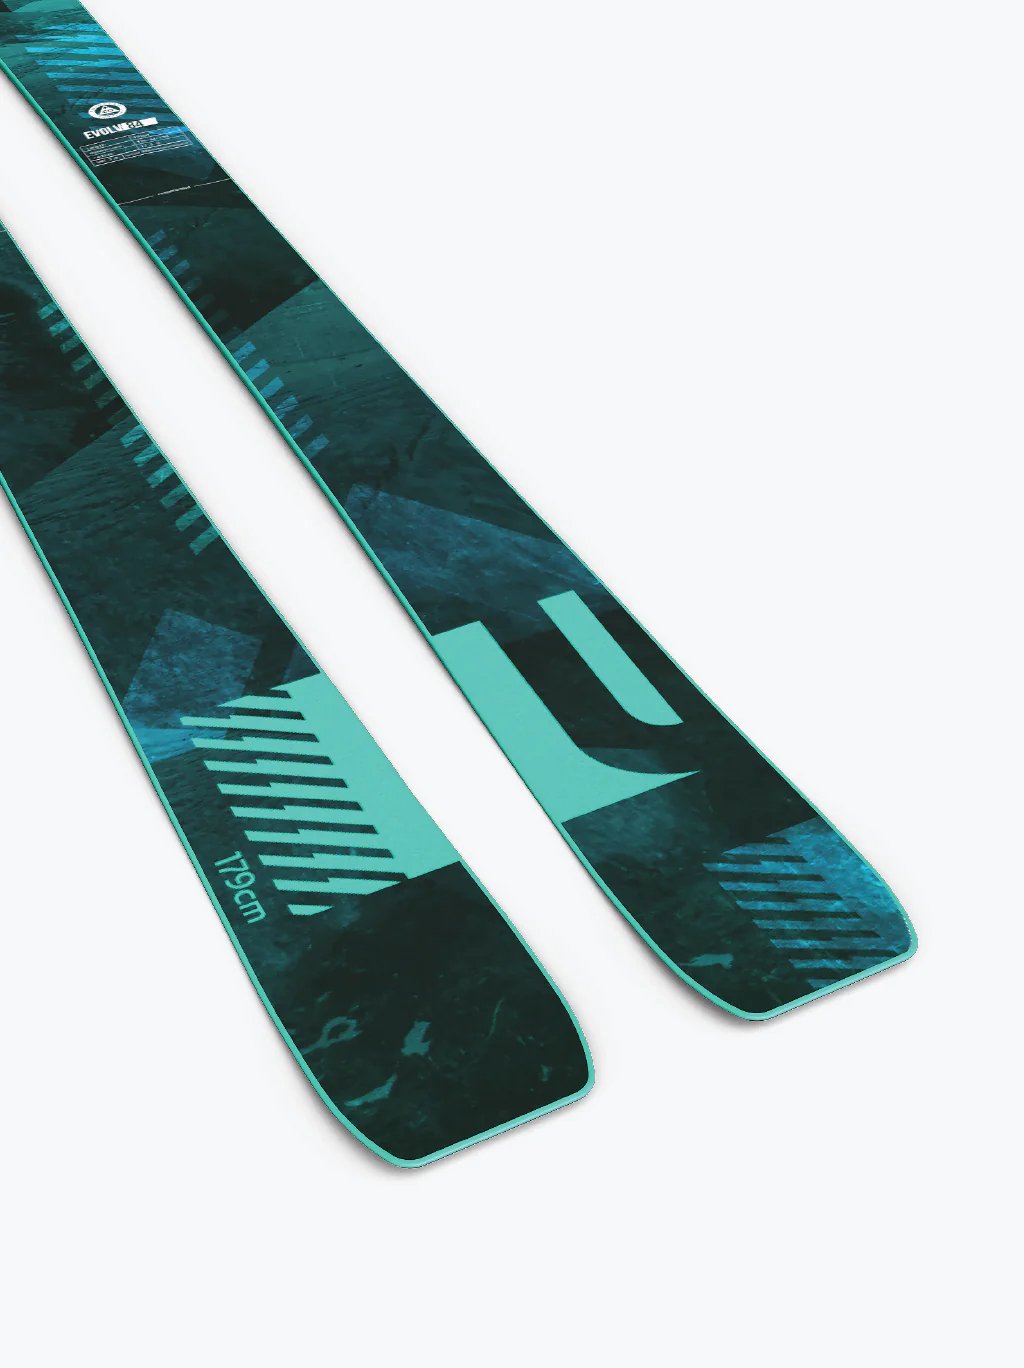 Liberty Evolv 84 Skis 2024 - FULLSEND SKI AND OUTDOOR